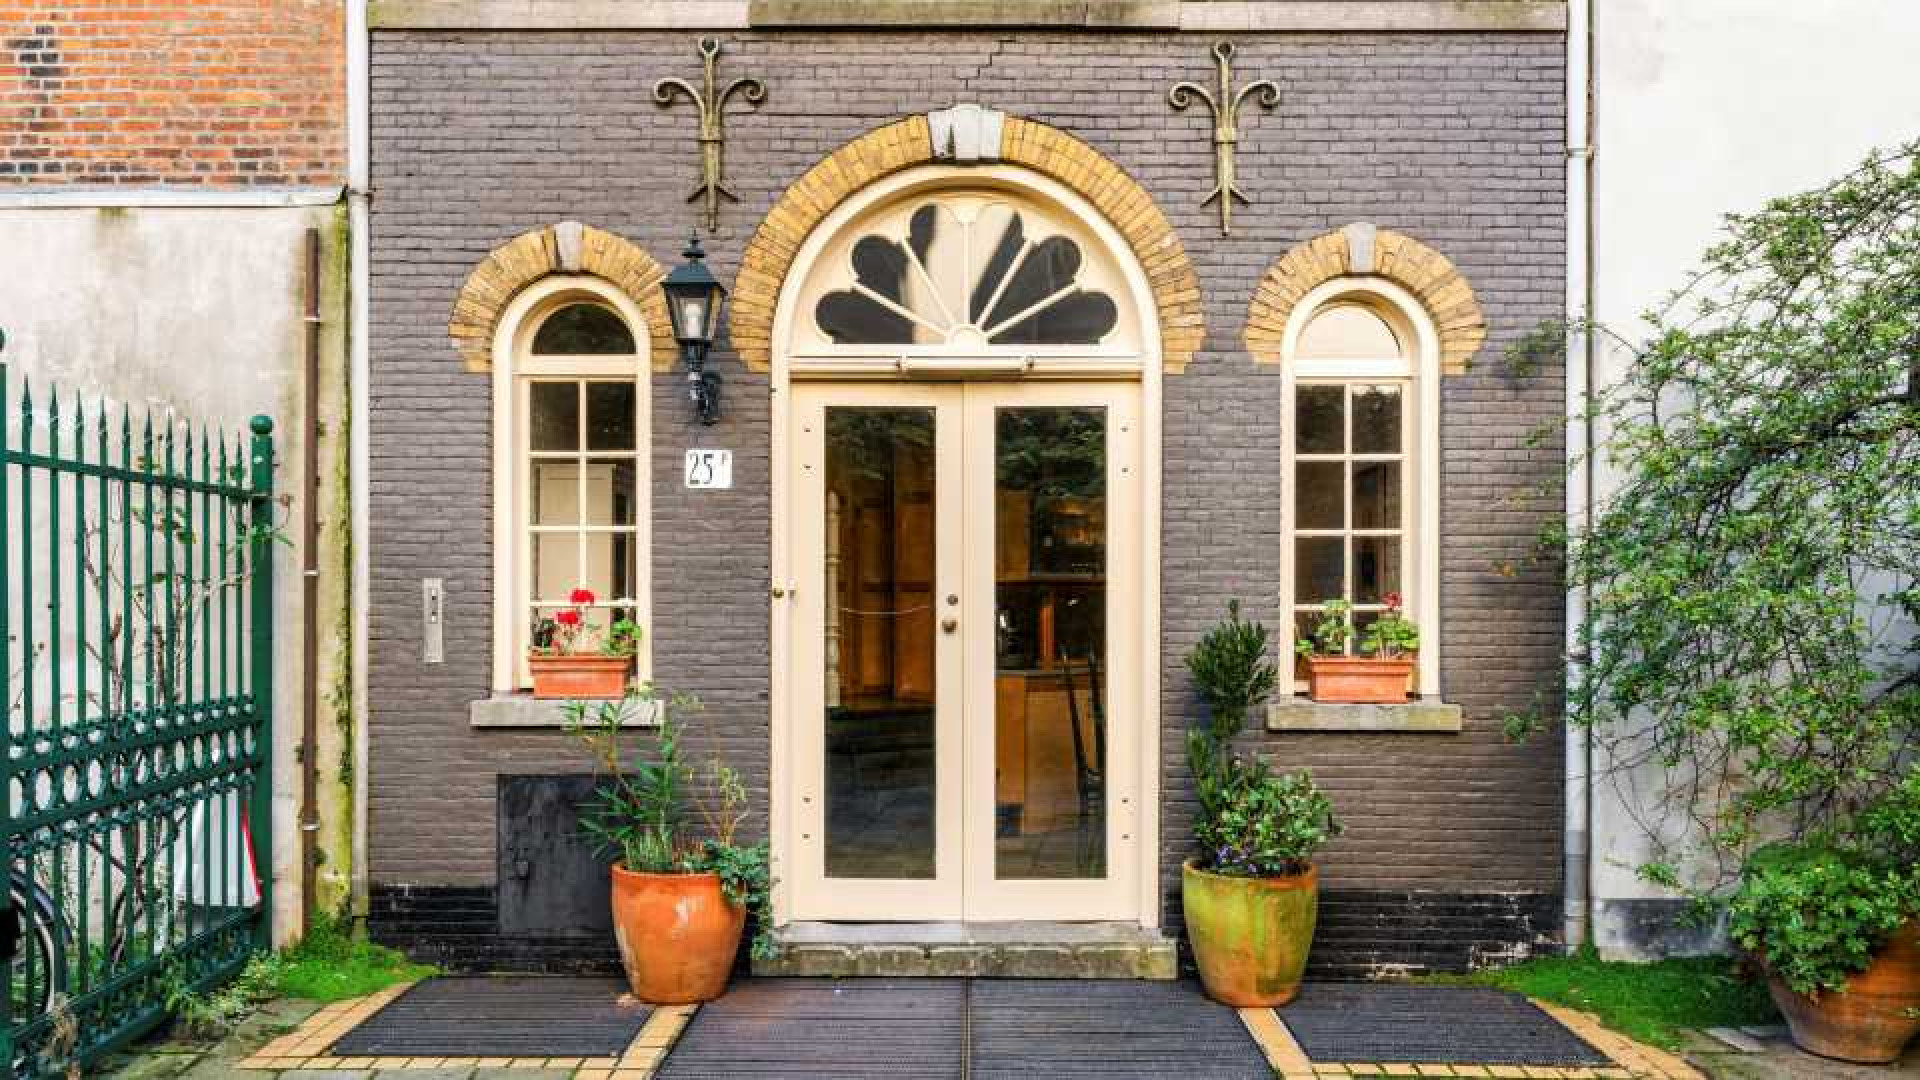 Deze te koop staande woning staat in de paleistuin van koning Willem Alexander en koningin Maxima. Zie foto's 1